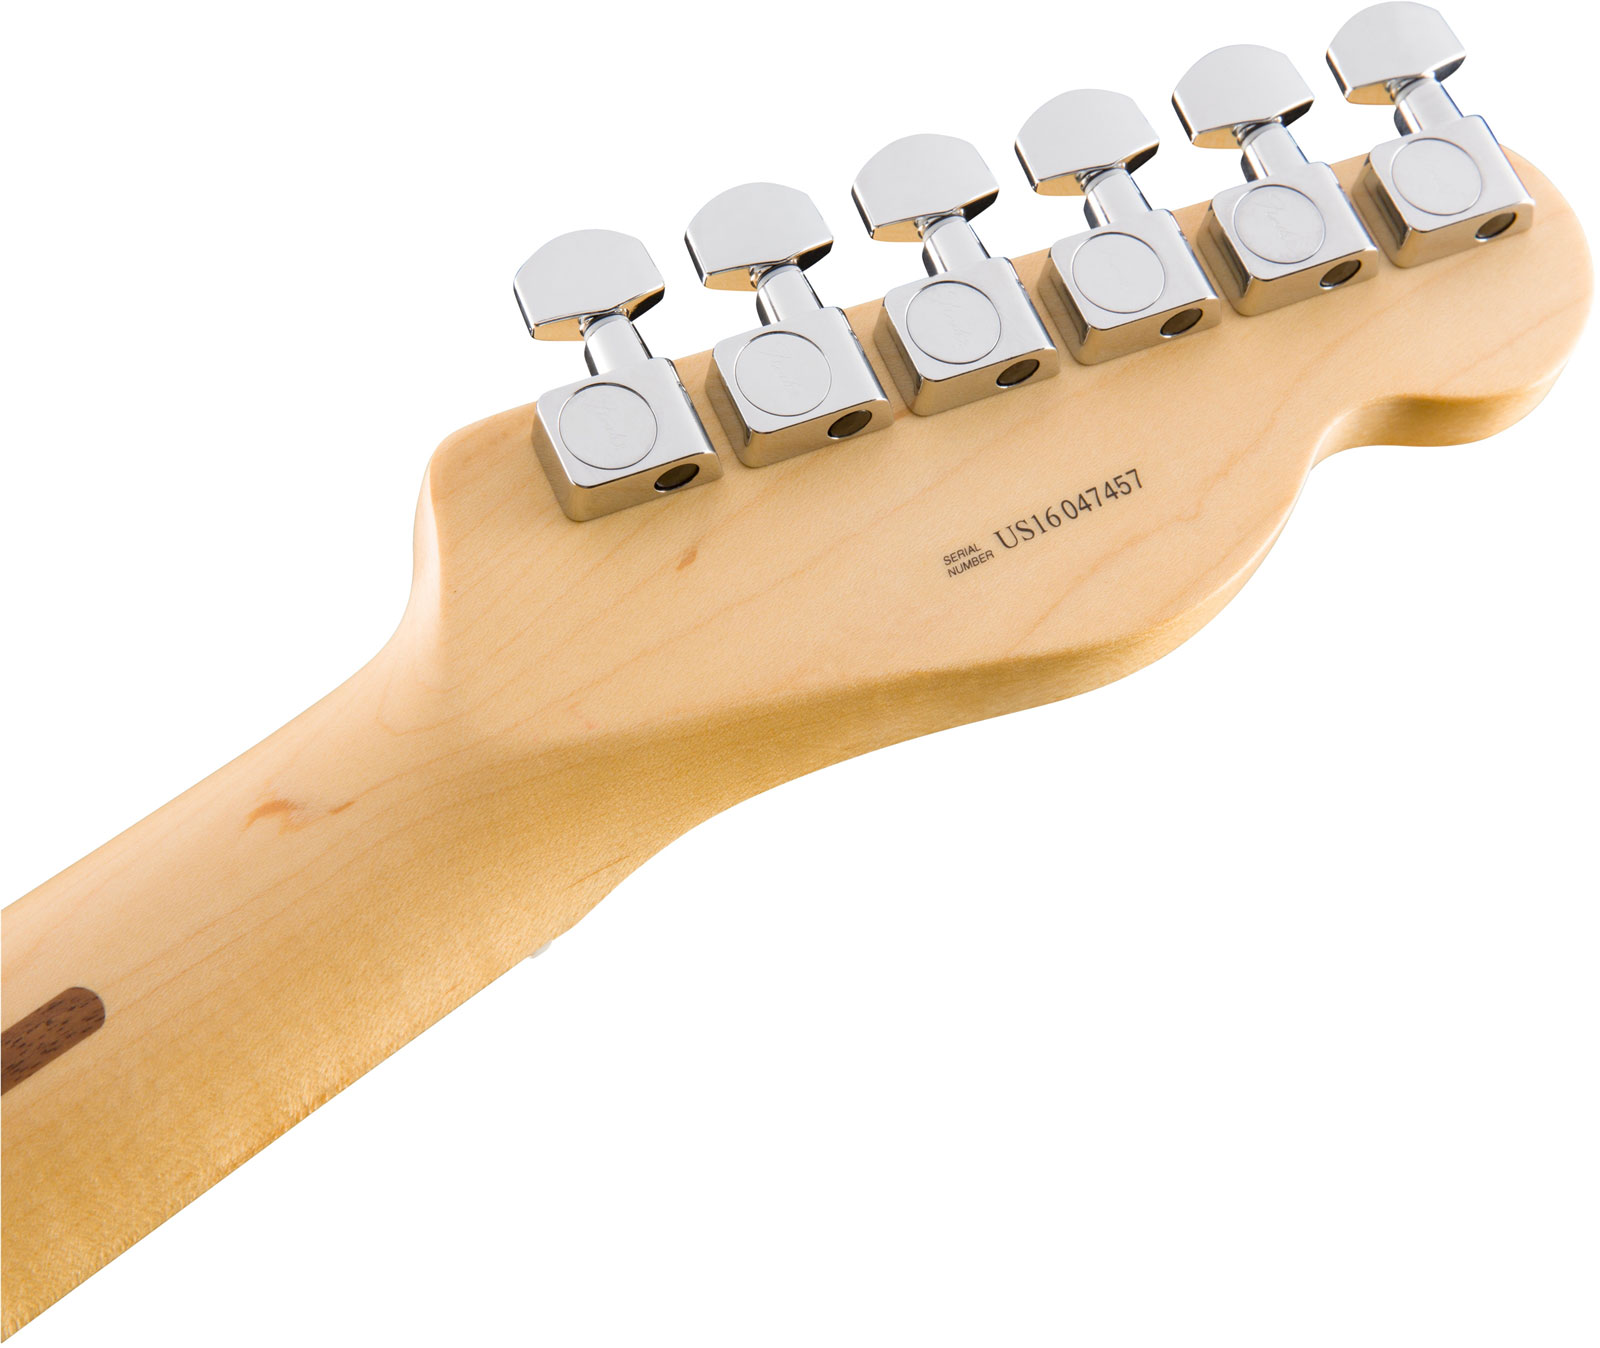 Fender Tele American Professional Lh Usa Gaucher 2s Mn - Butterscotch Blonde - Linkshandige elektrische gitaar - Variation 4